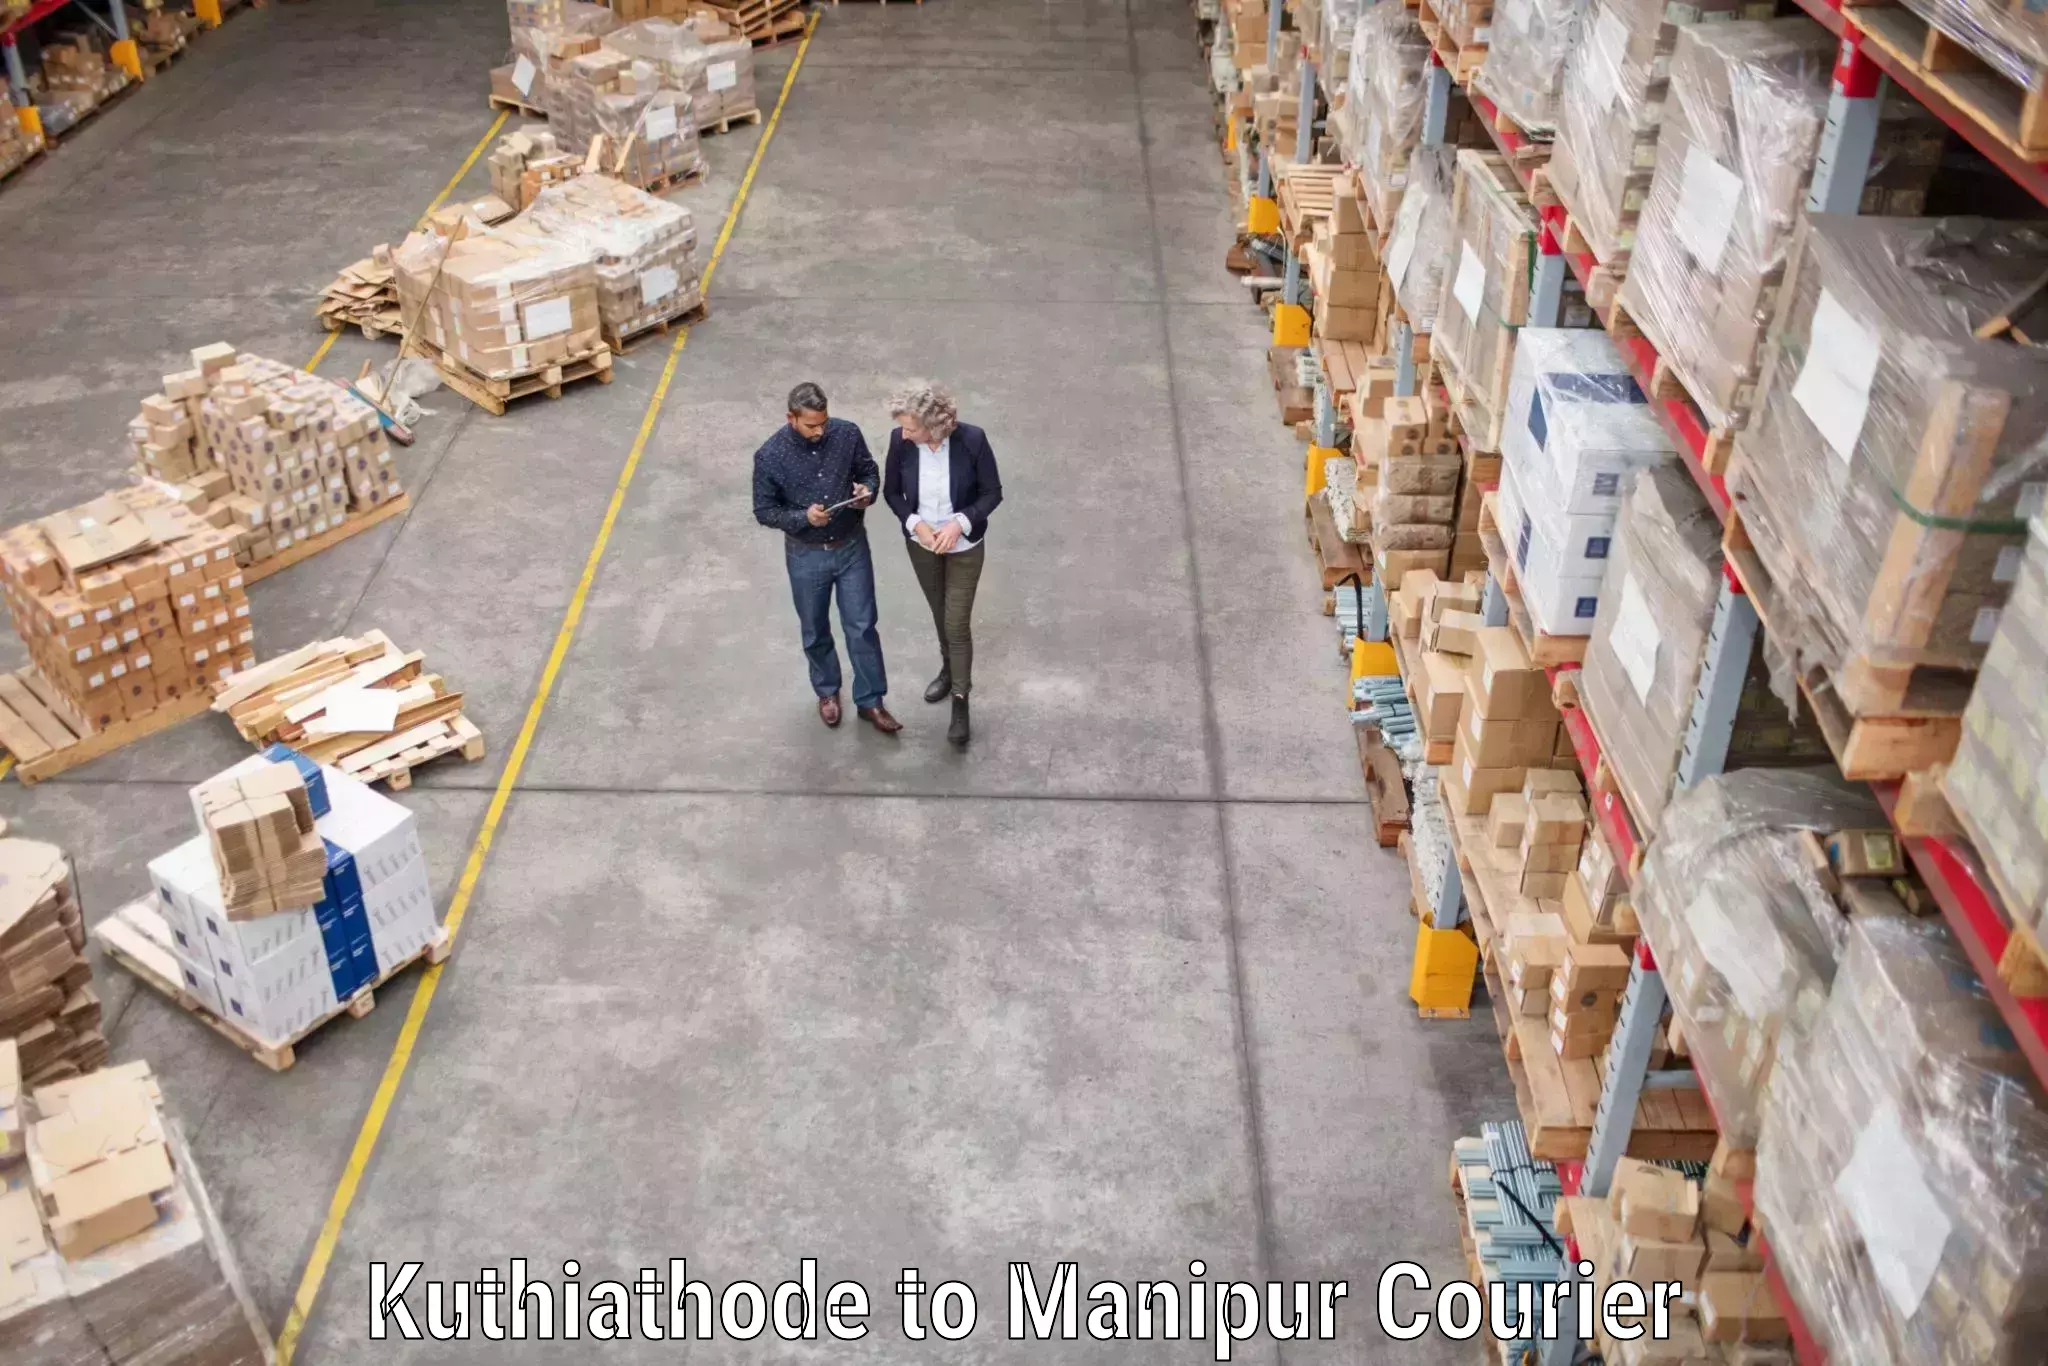 Trusted moving company Kuthiathode to Ukhrul